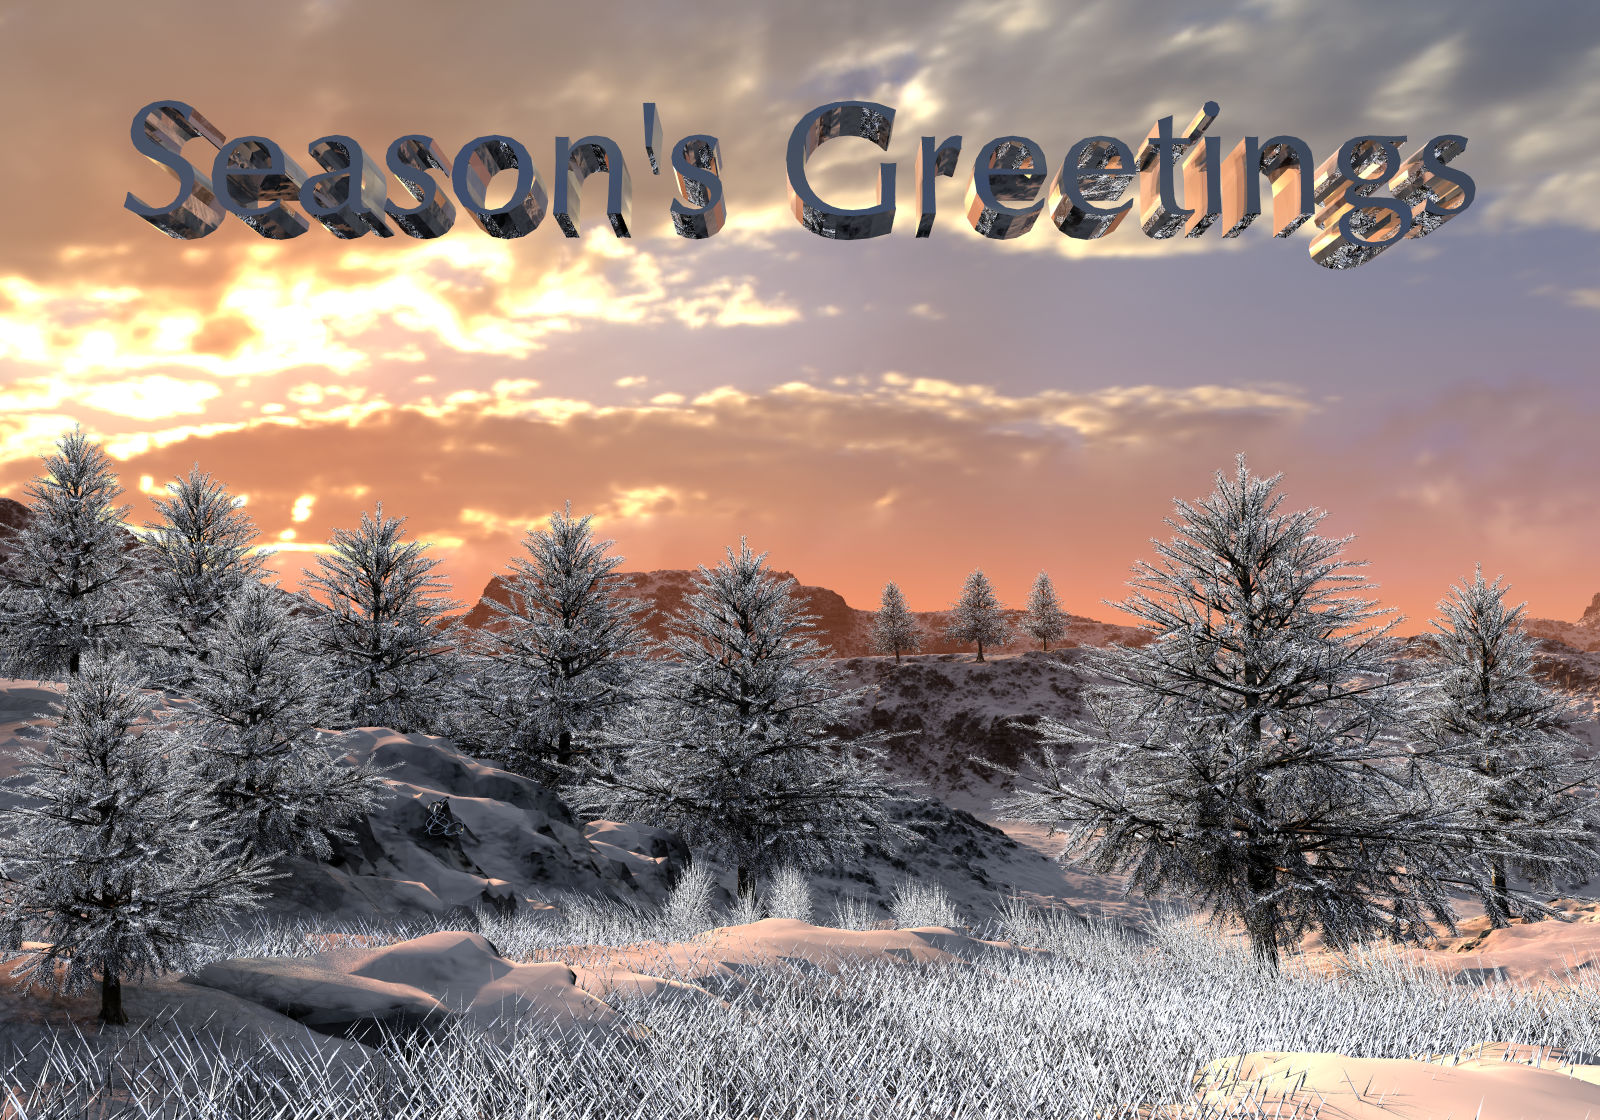 Seasons Greetings 2018